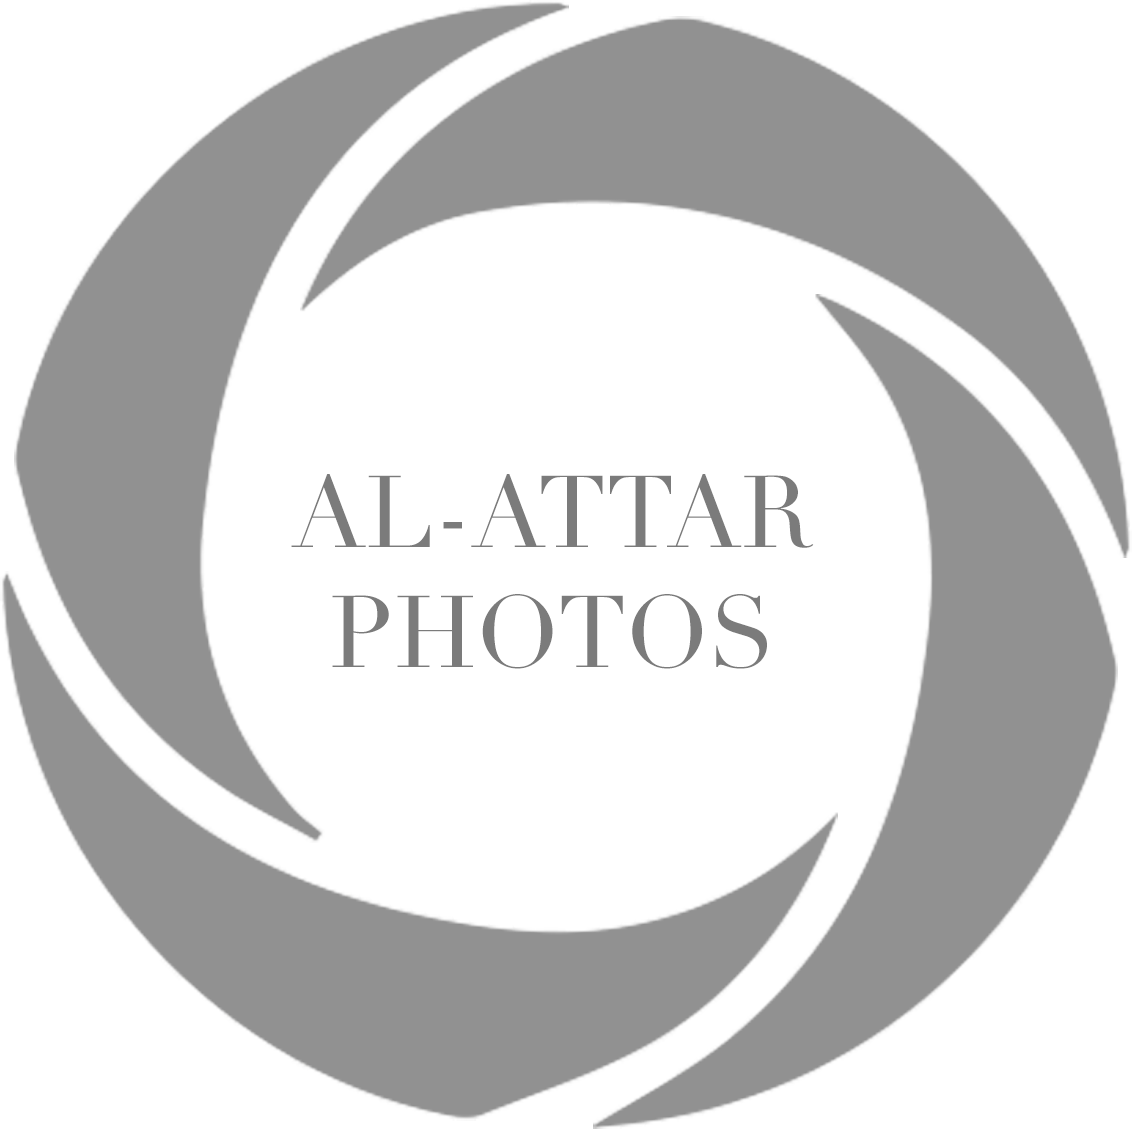 Al-Attar Photos